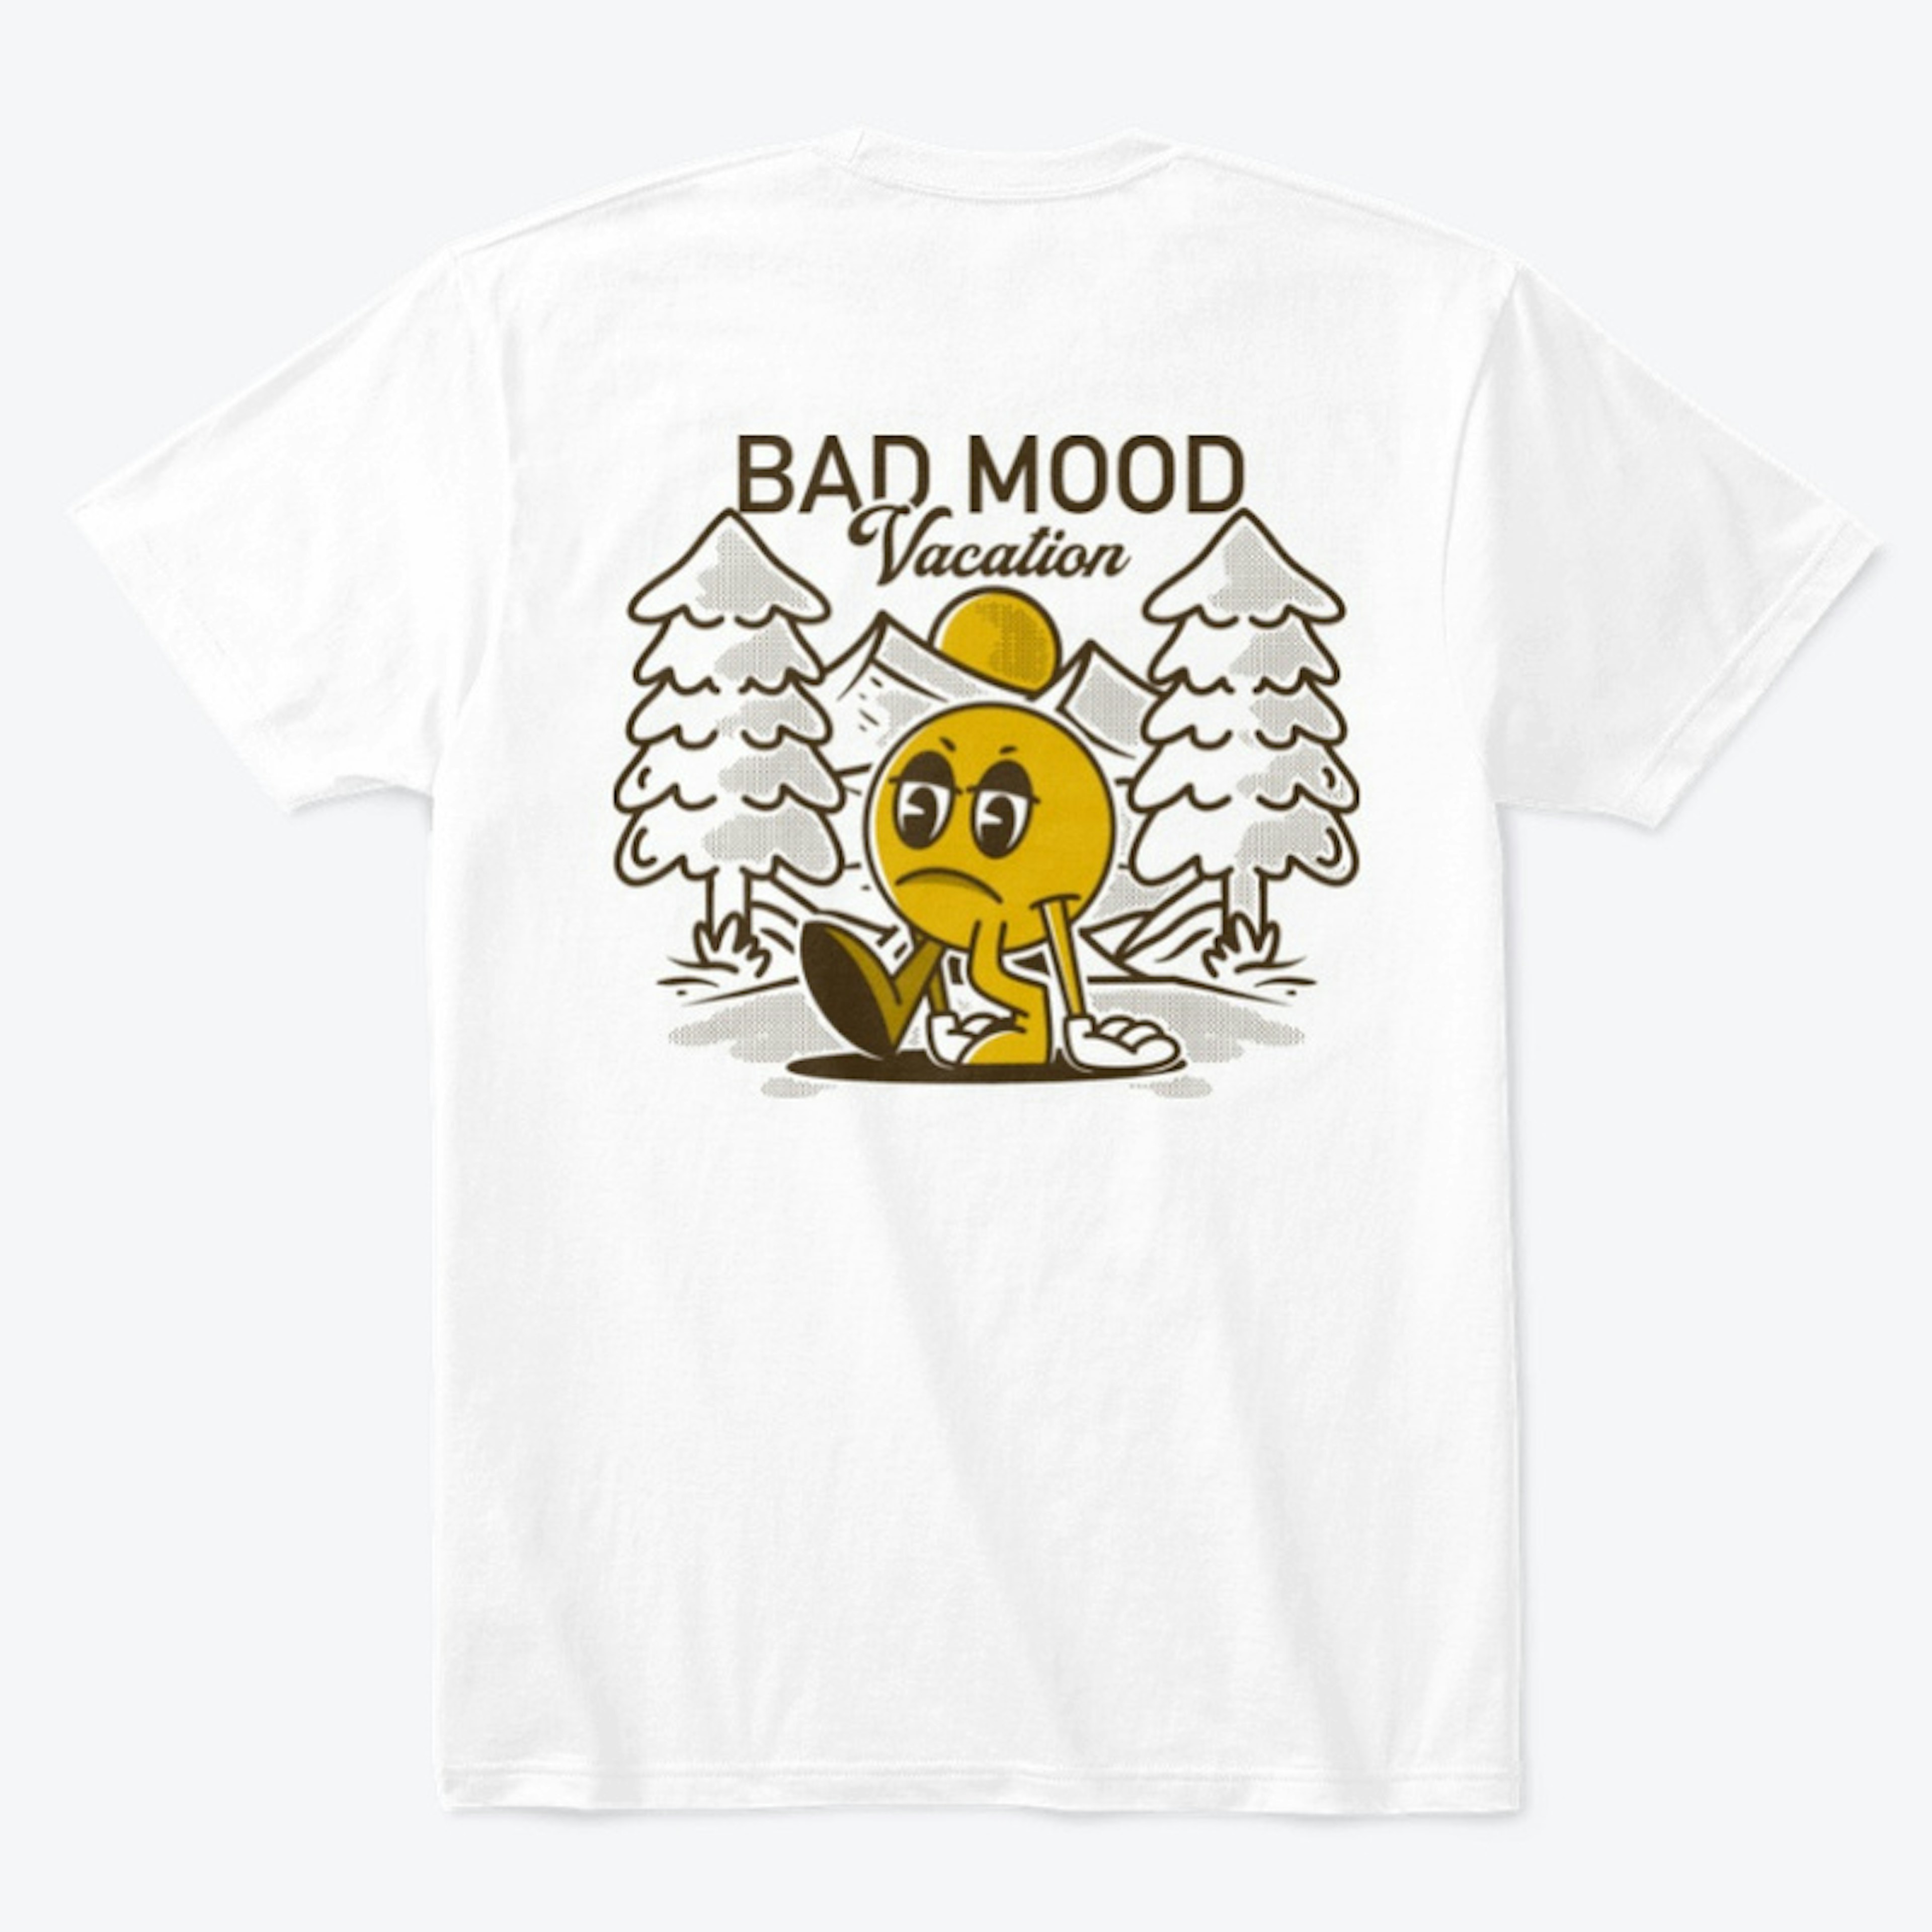 Bad mood vacation character